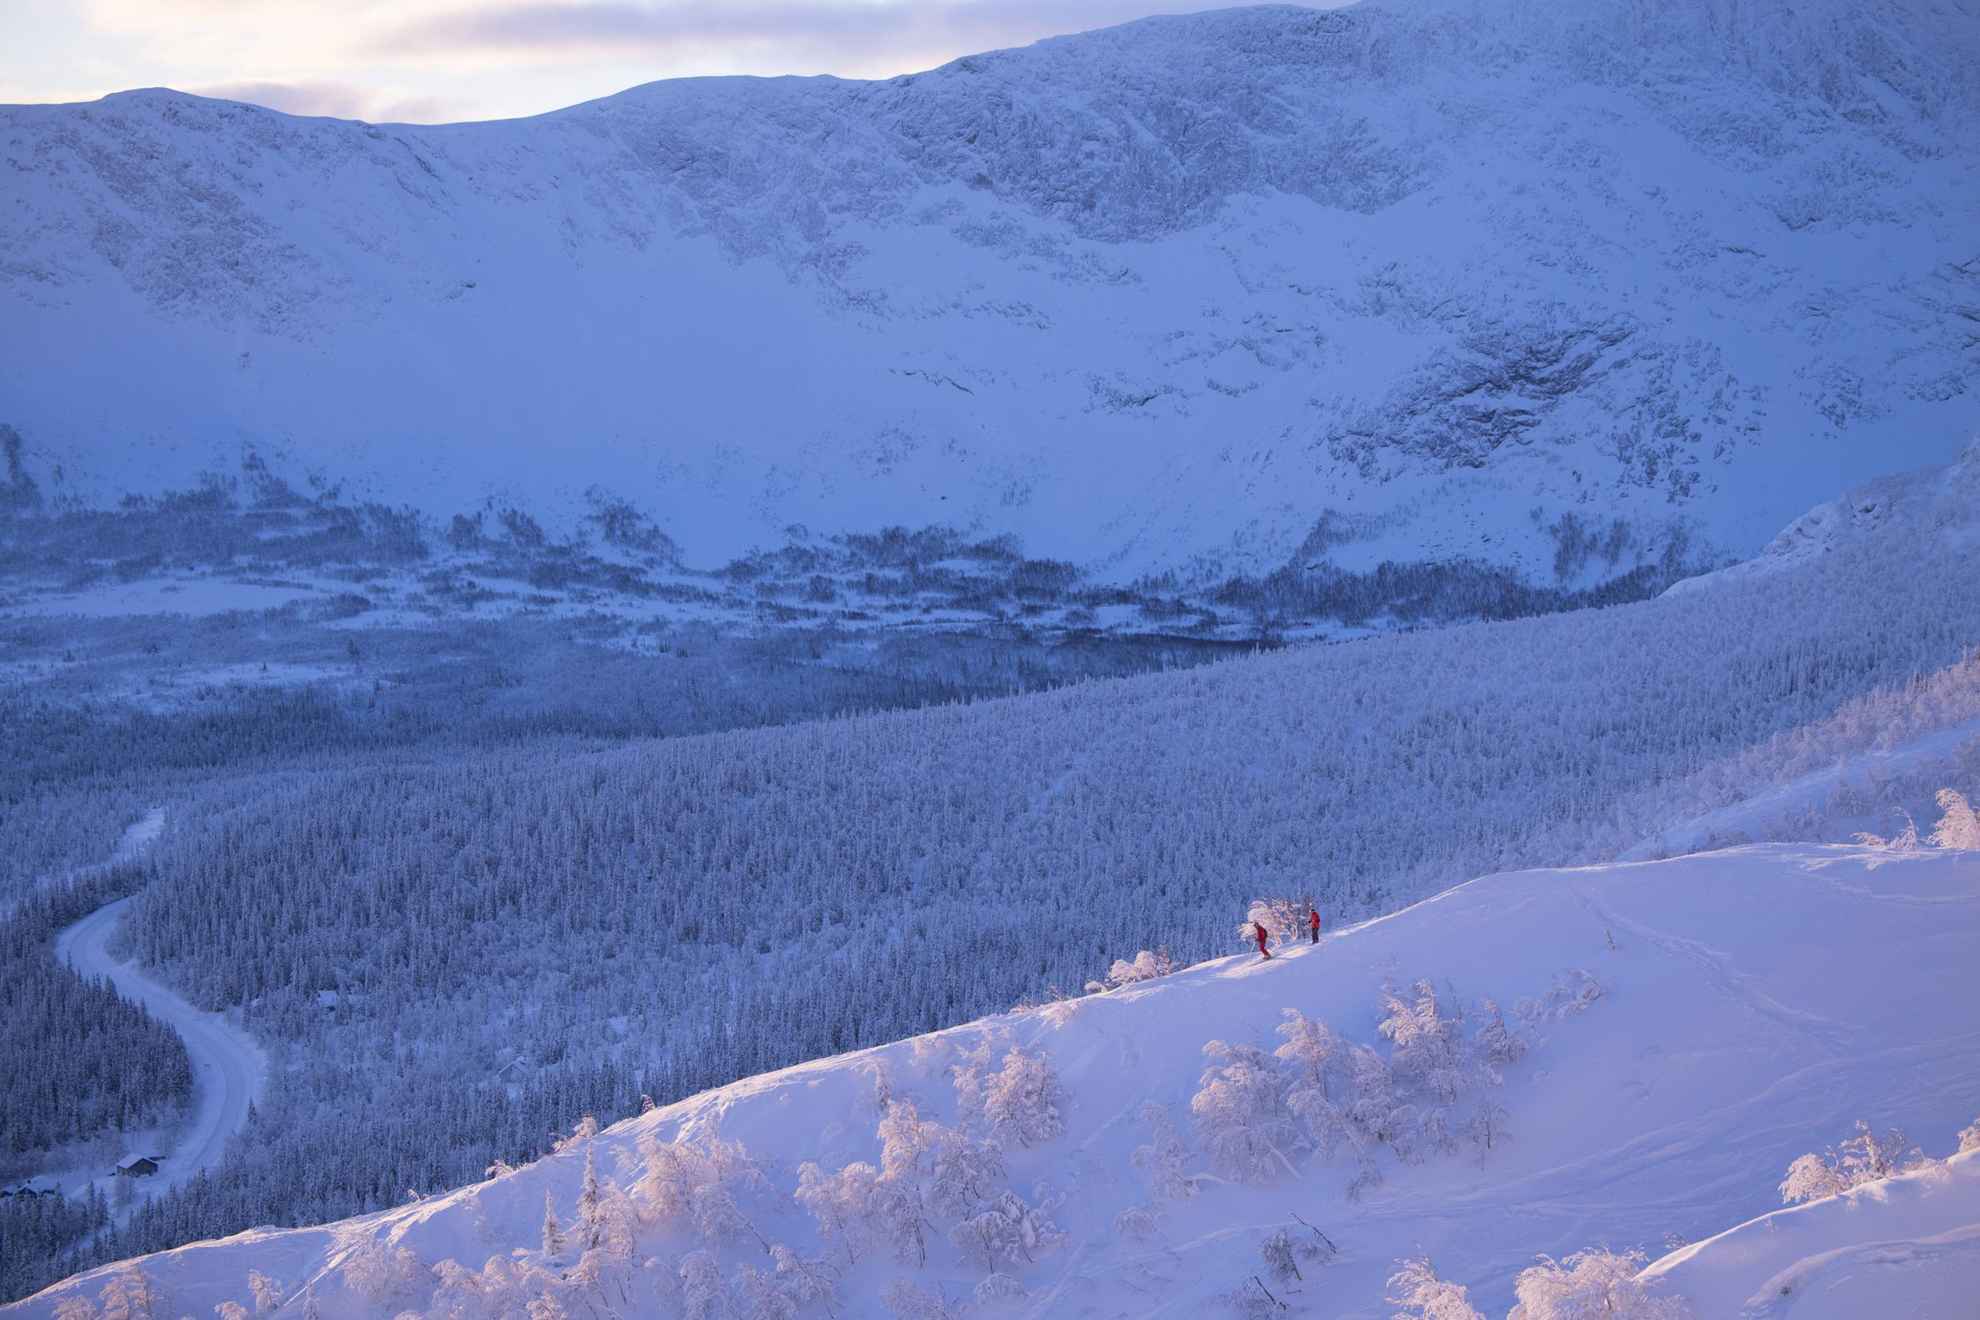 Eine malerischer Winterlandschaft. Zwei Personen fahren Ski und im Hintergrund ist ein Berg zu sehen.